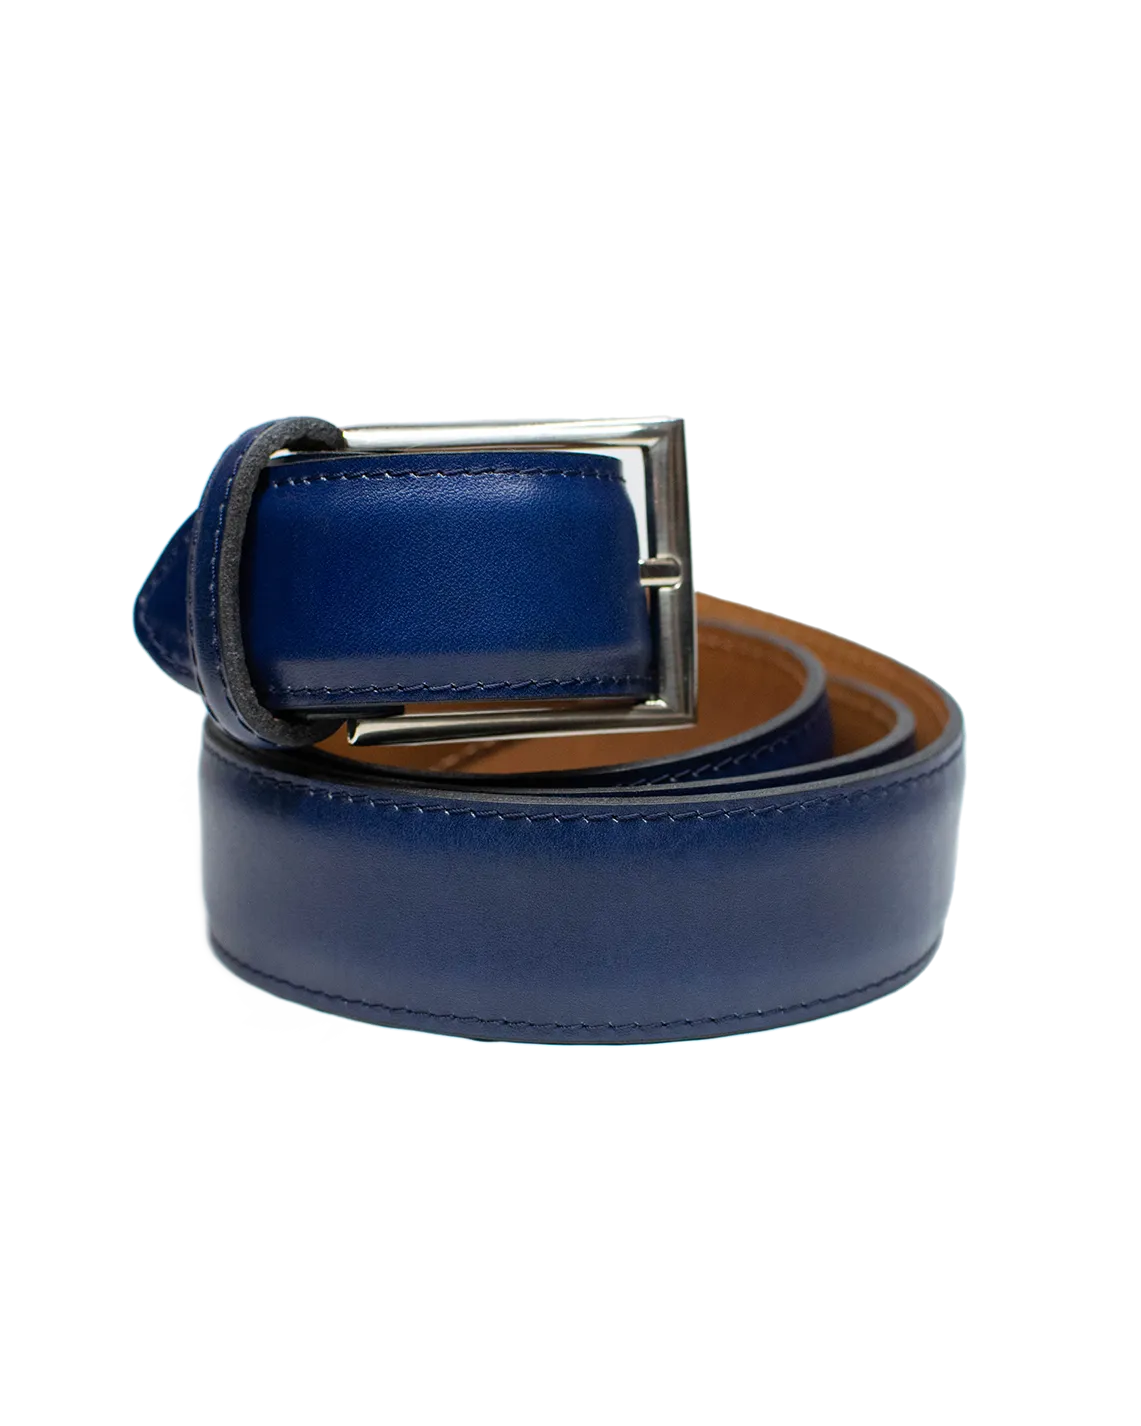 Cinturón clásico en color azul